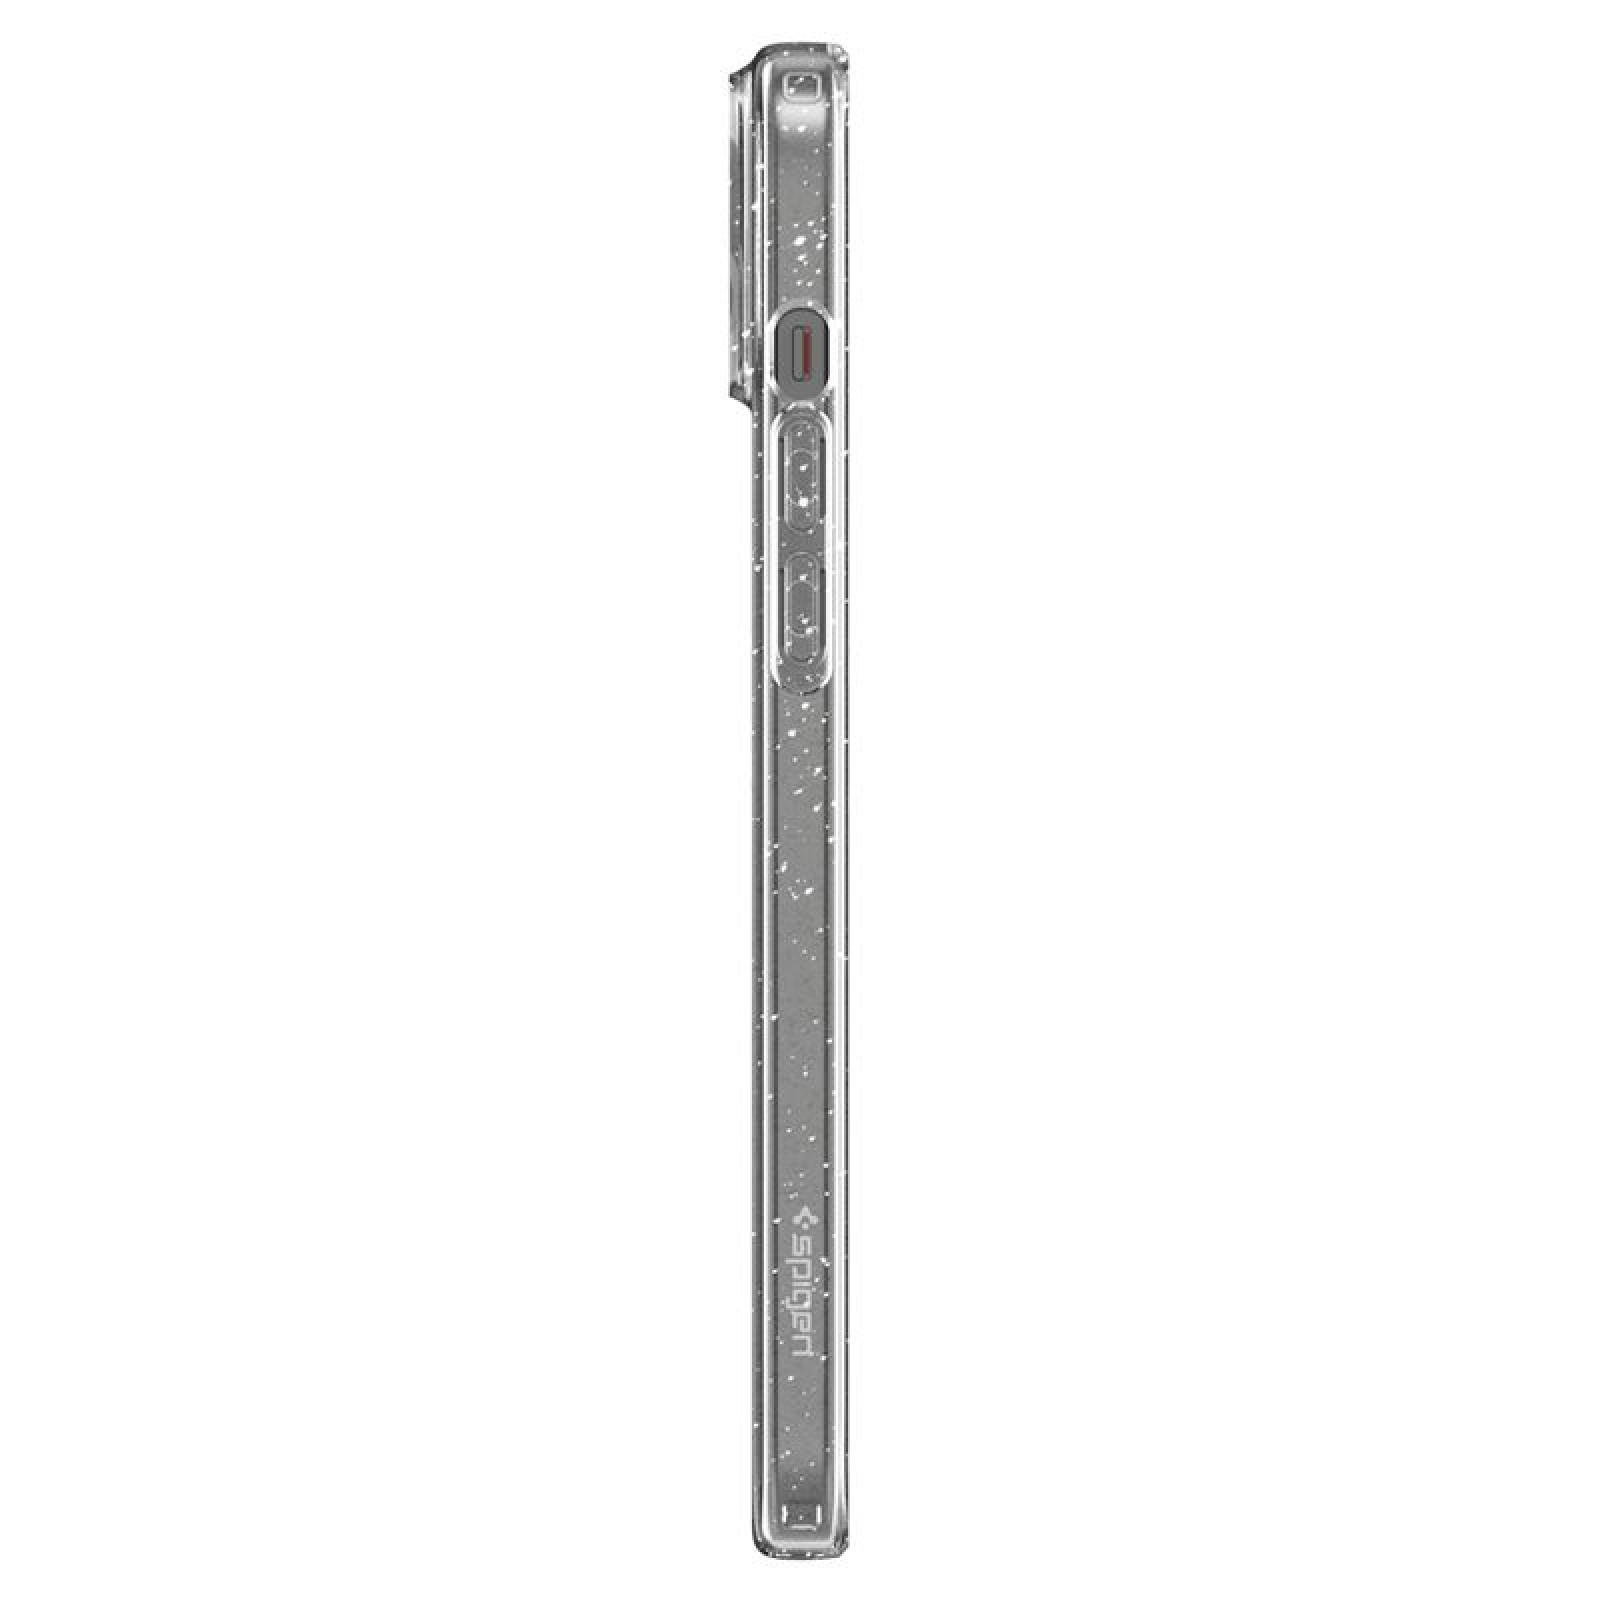 Гръб Spigen за iPhone 15, Liquid Crystal Glitter, Прозрачен, блестящ rating